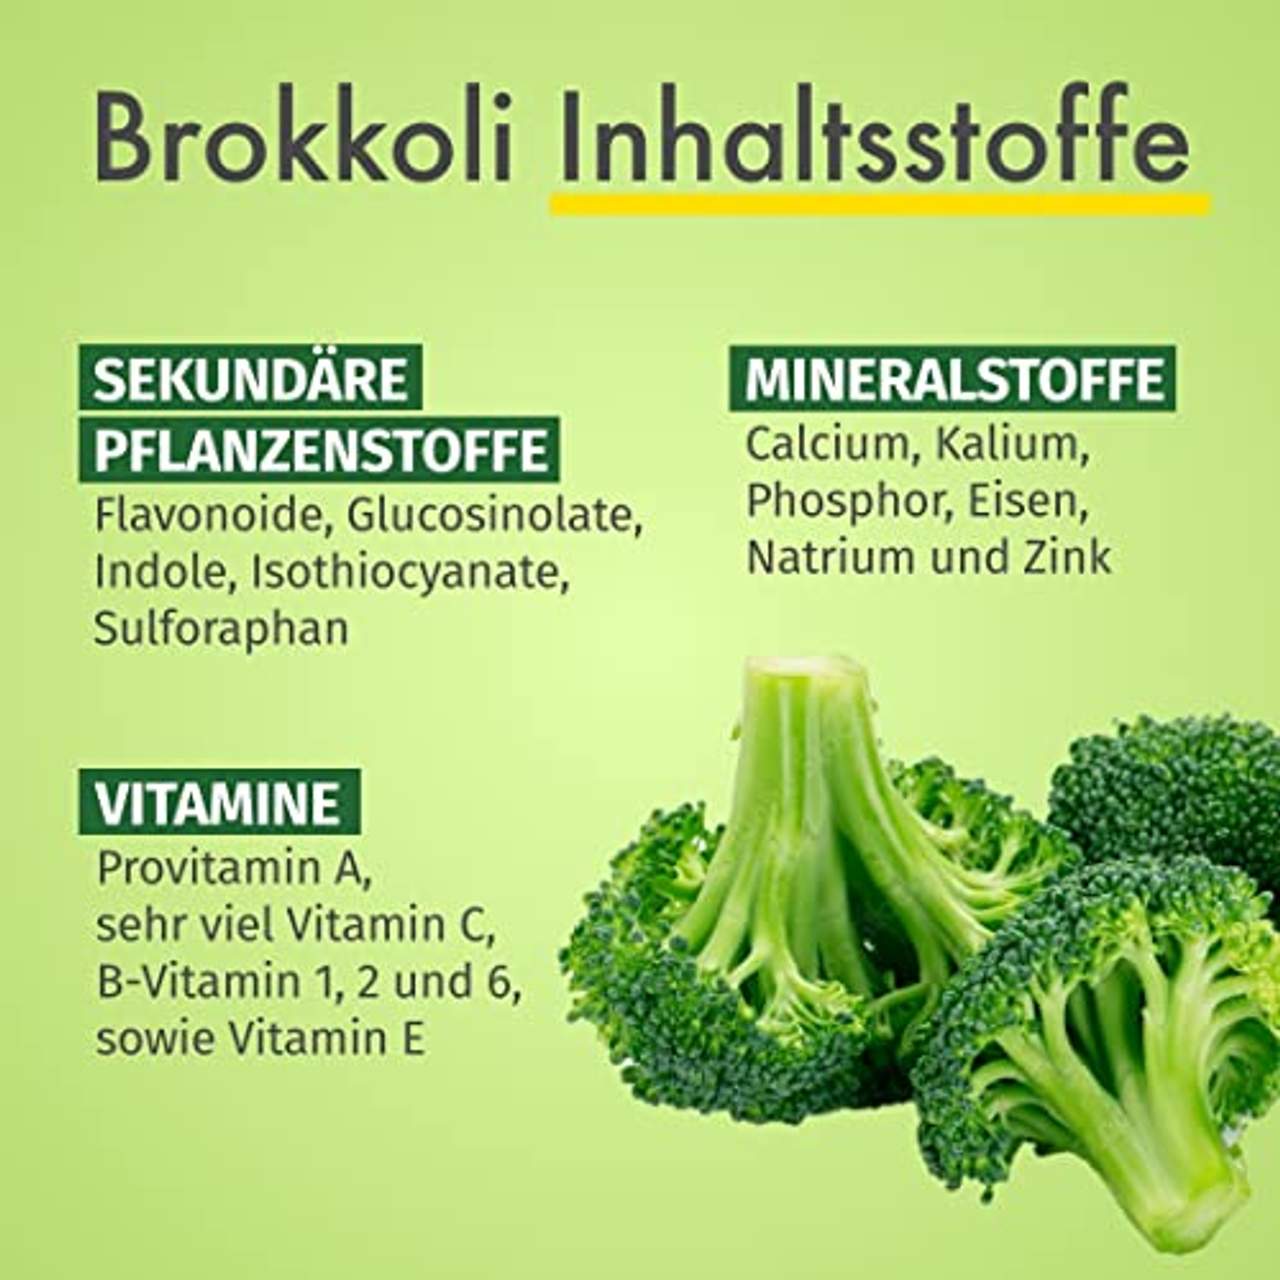 GREEN NATURALS Brokkoli Extrakt